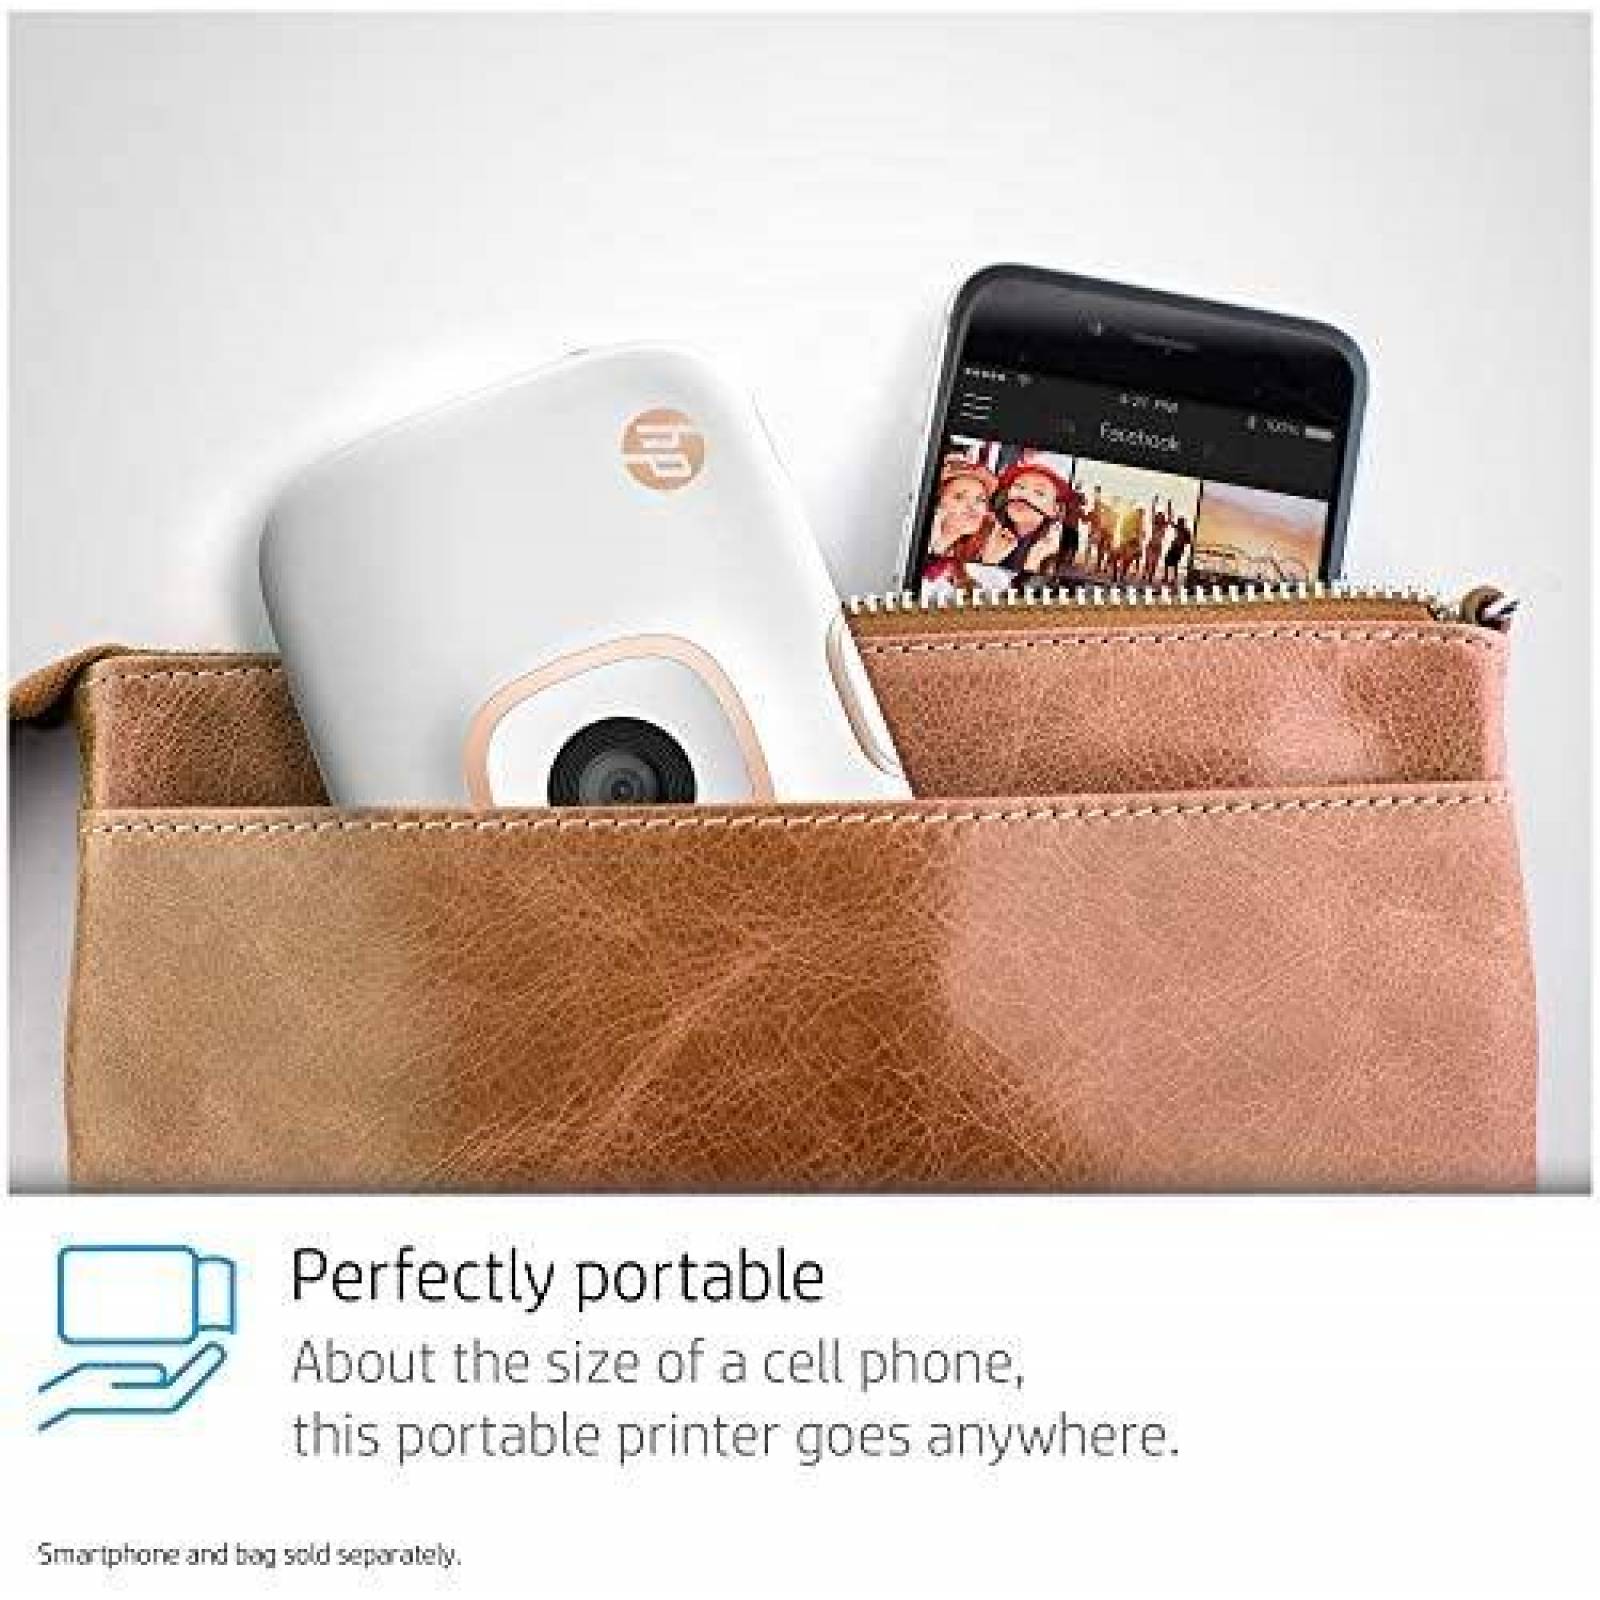 HP Sprocket - Paquete de impresora fotográfica portátil 2 en 1 y cámara  instantánea con tarjeta microSD de 8 GB y papel fotográfico Zink, color  blanco